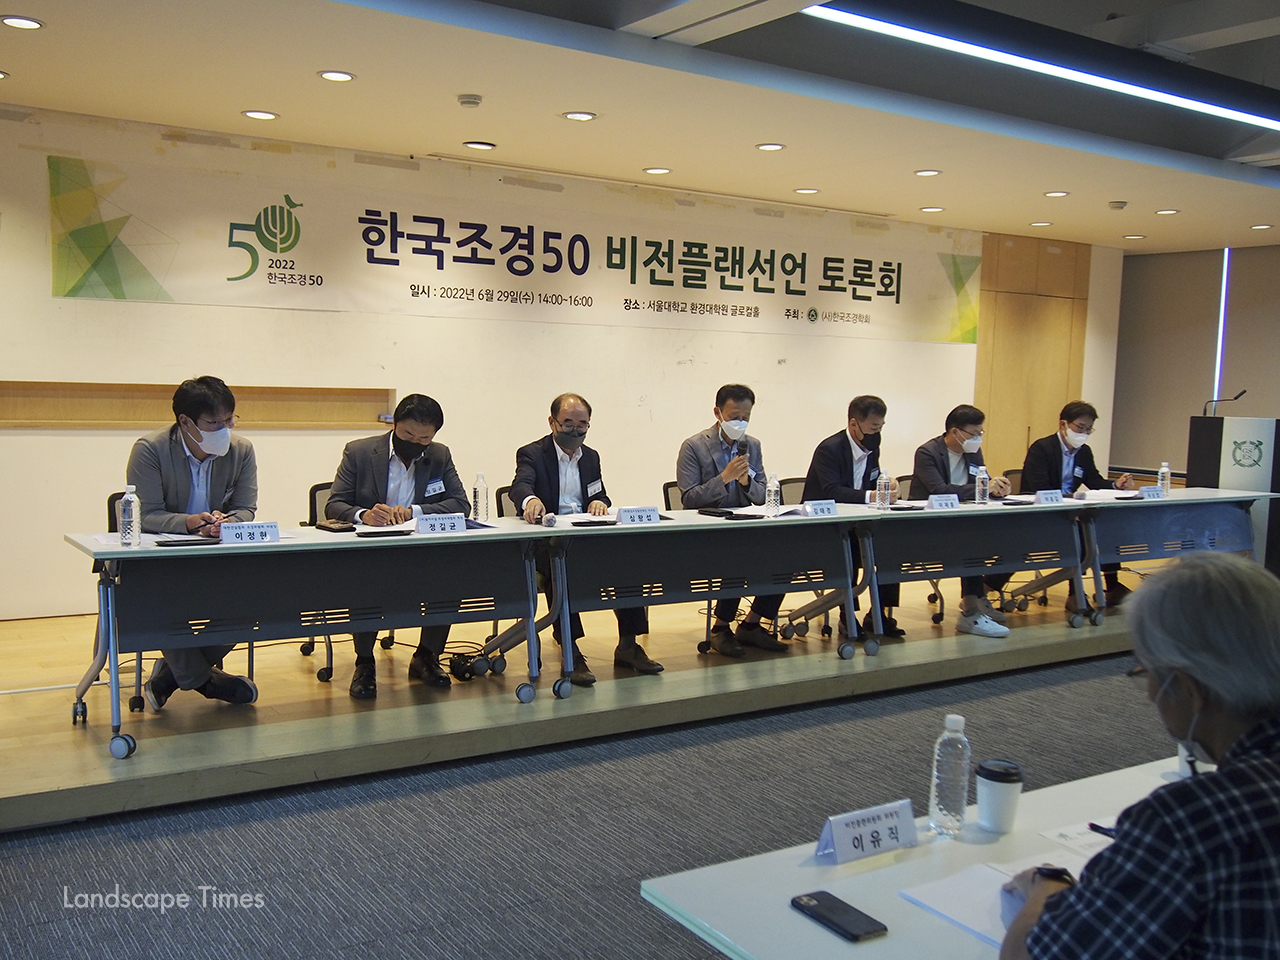 지난달 29일에 개최된 한국조경 50주년 비전플랜 선언 토론회.